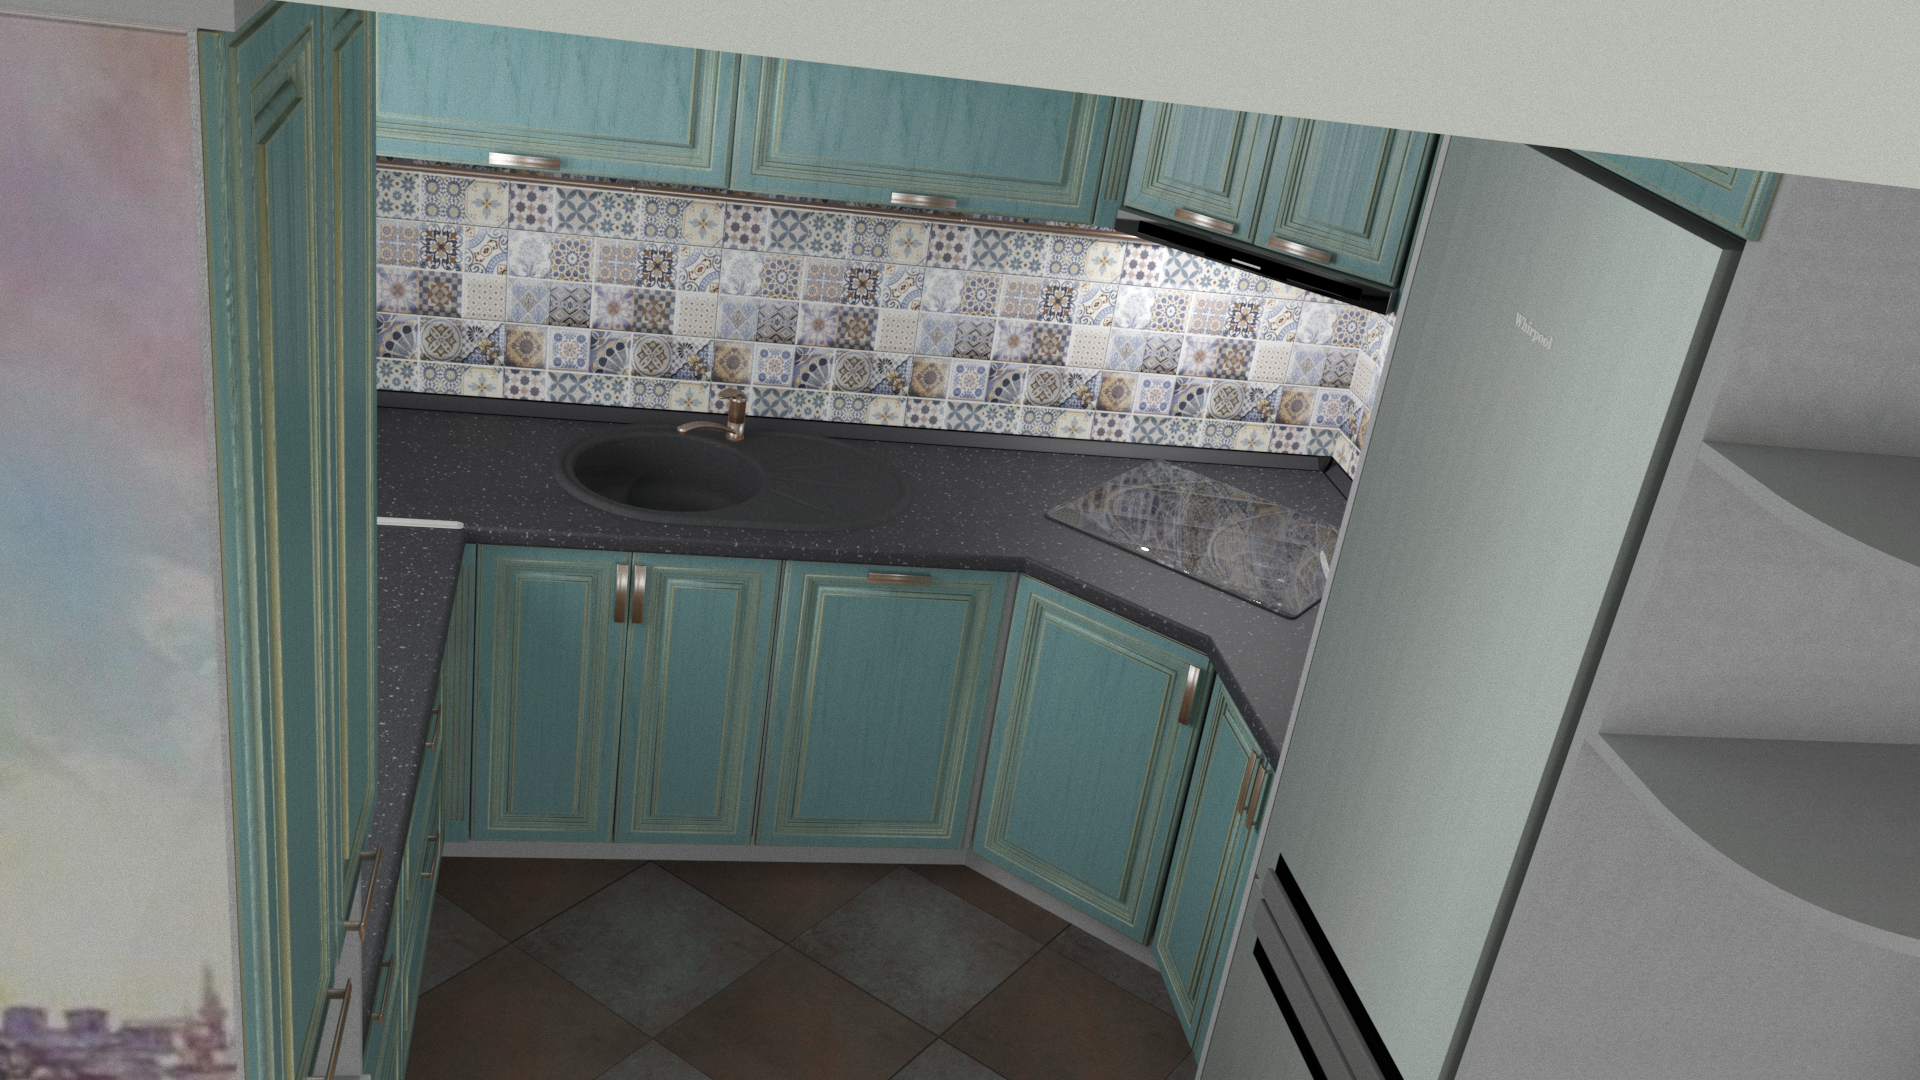 La cucina nella casa chasnom in 3d max corona render immagine